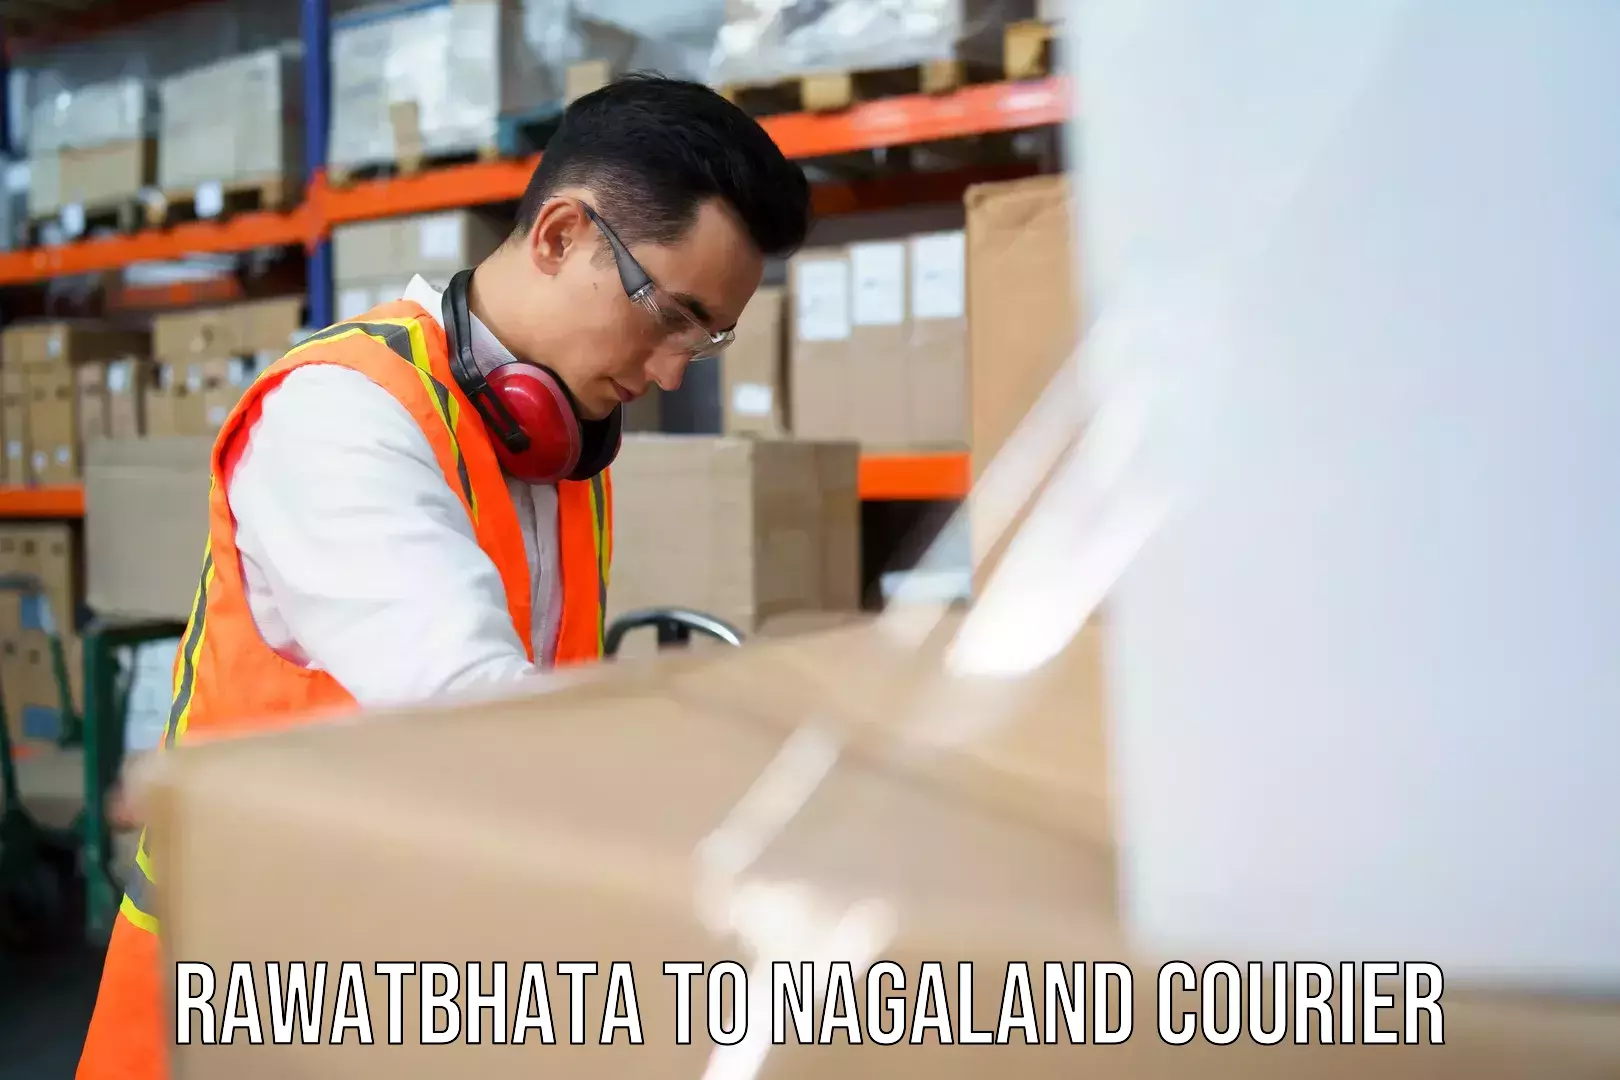 Individual parcel service Rawatbhata to Nagaland